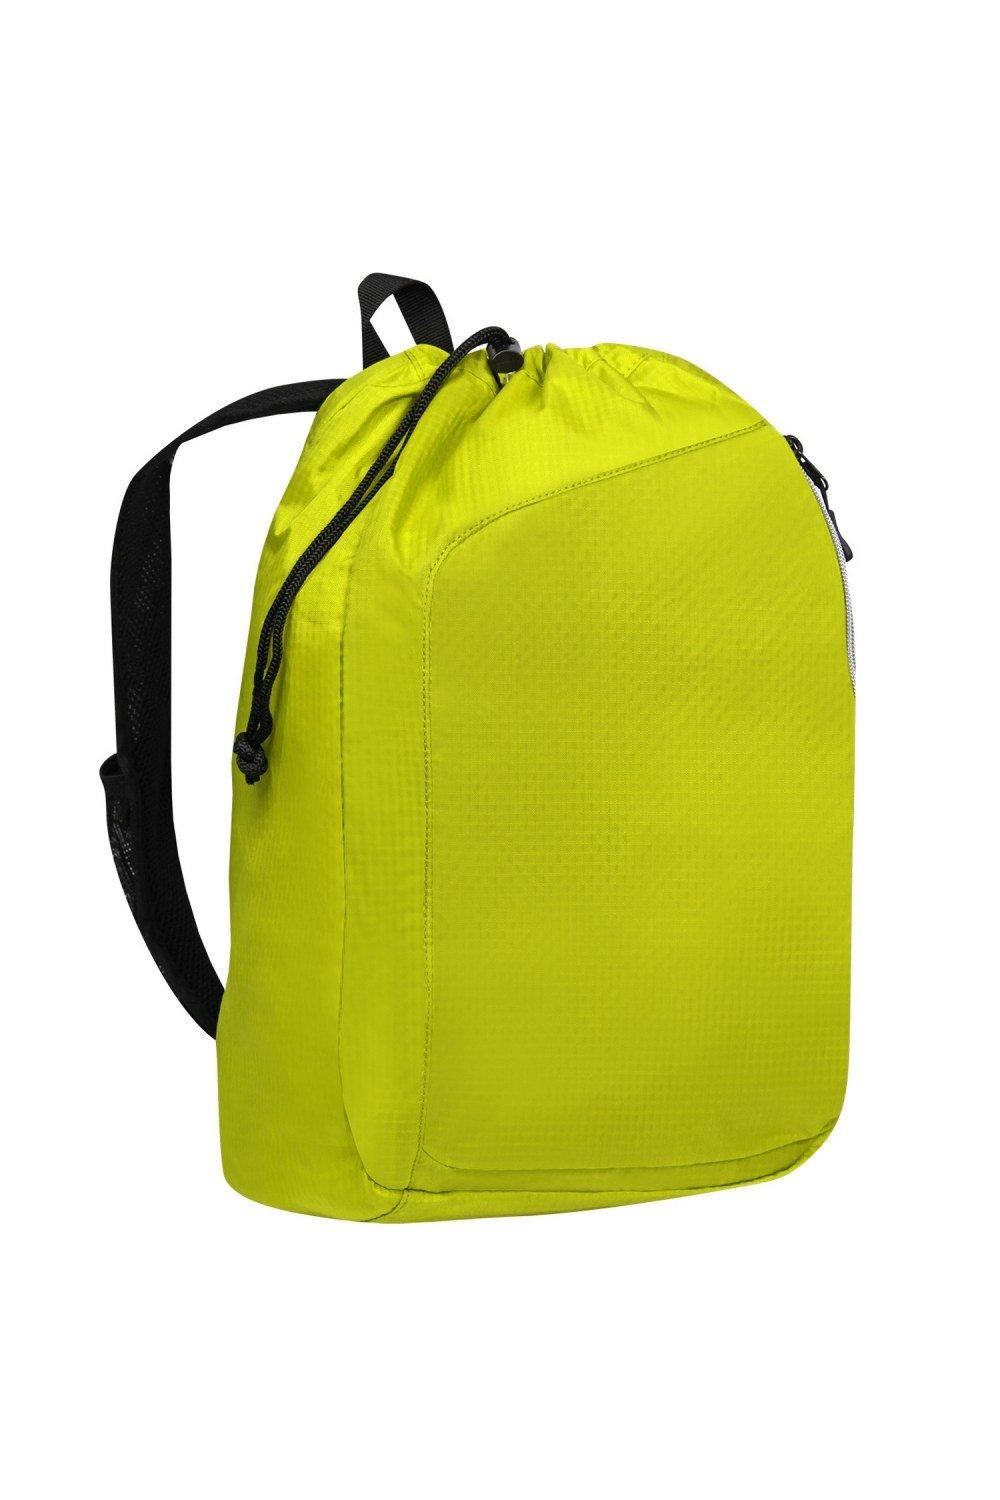 Рюкзак Endurance Sonic с одним ремнем Ogio, желтый сумка endurance pulse на шнурке ogio синий